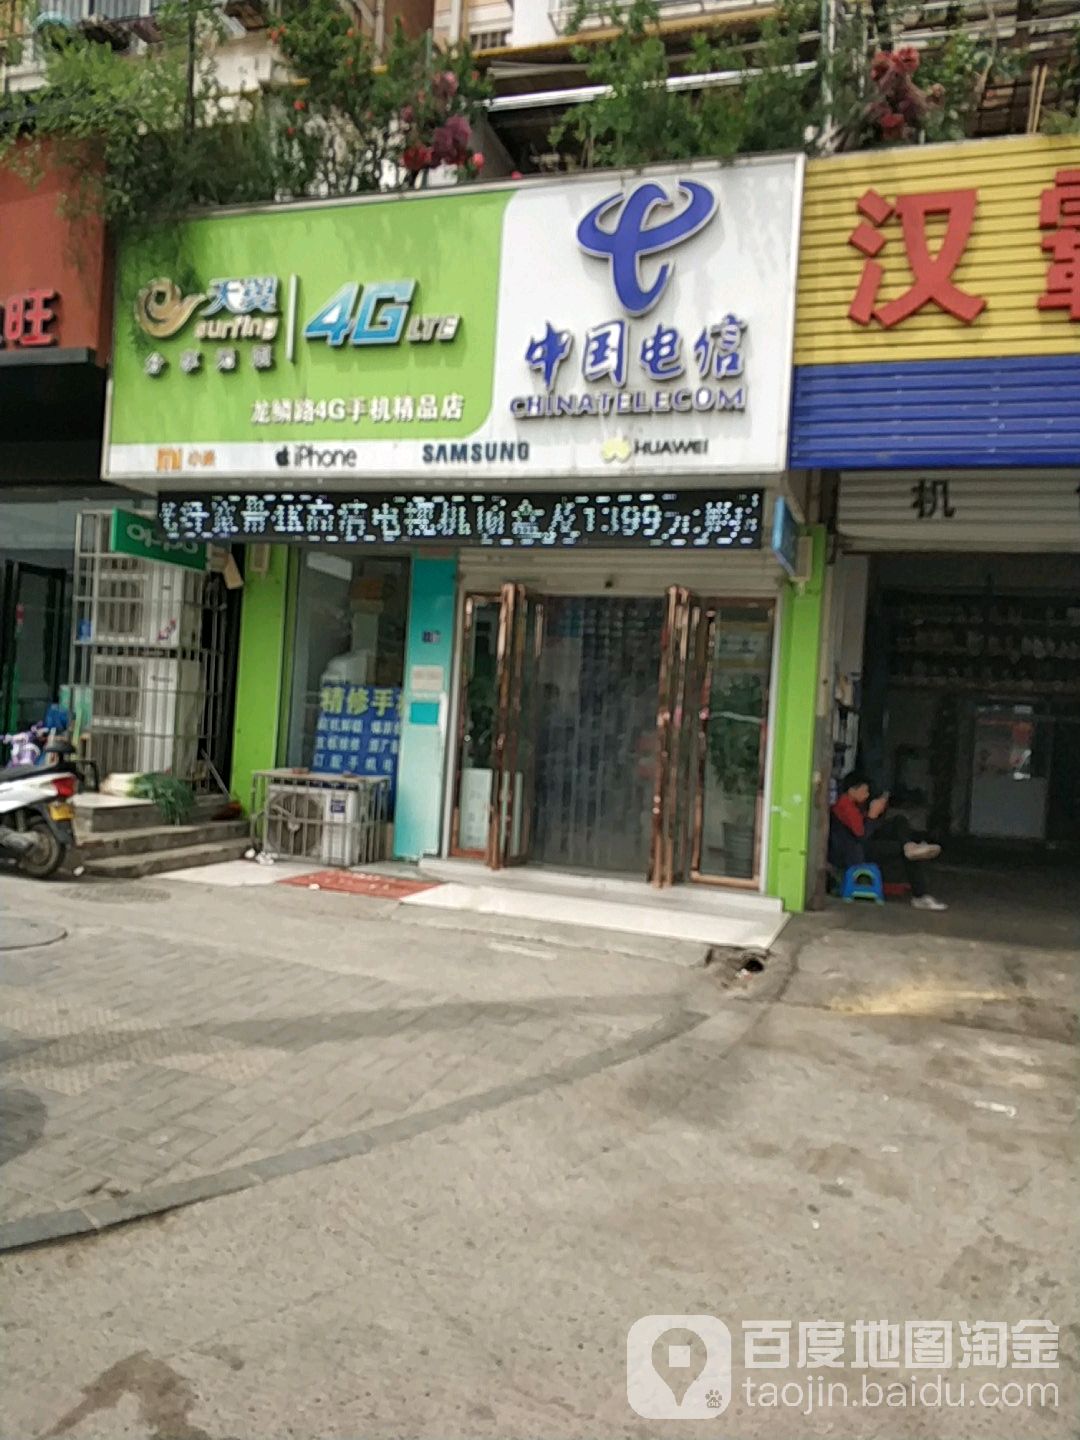 中國電信(龍鱗路4G手機精品店)